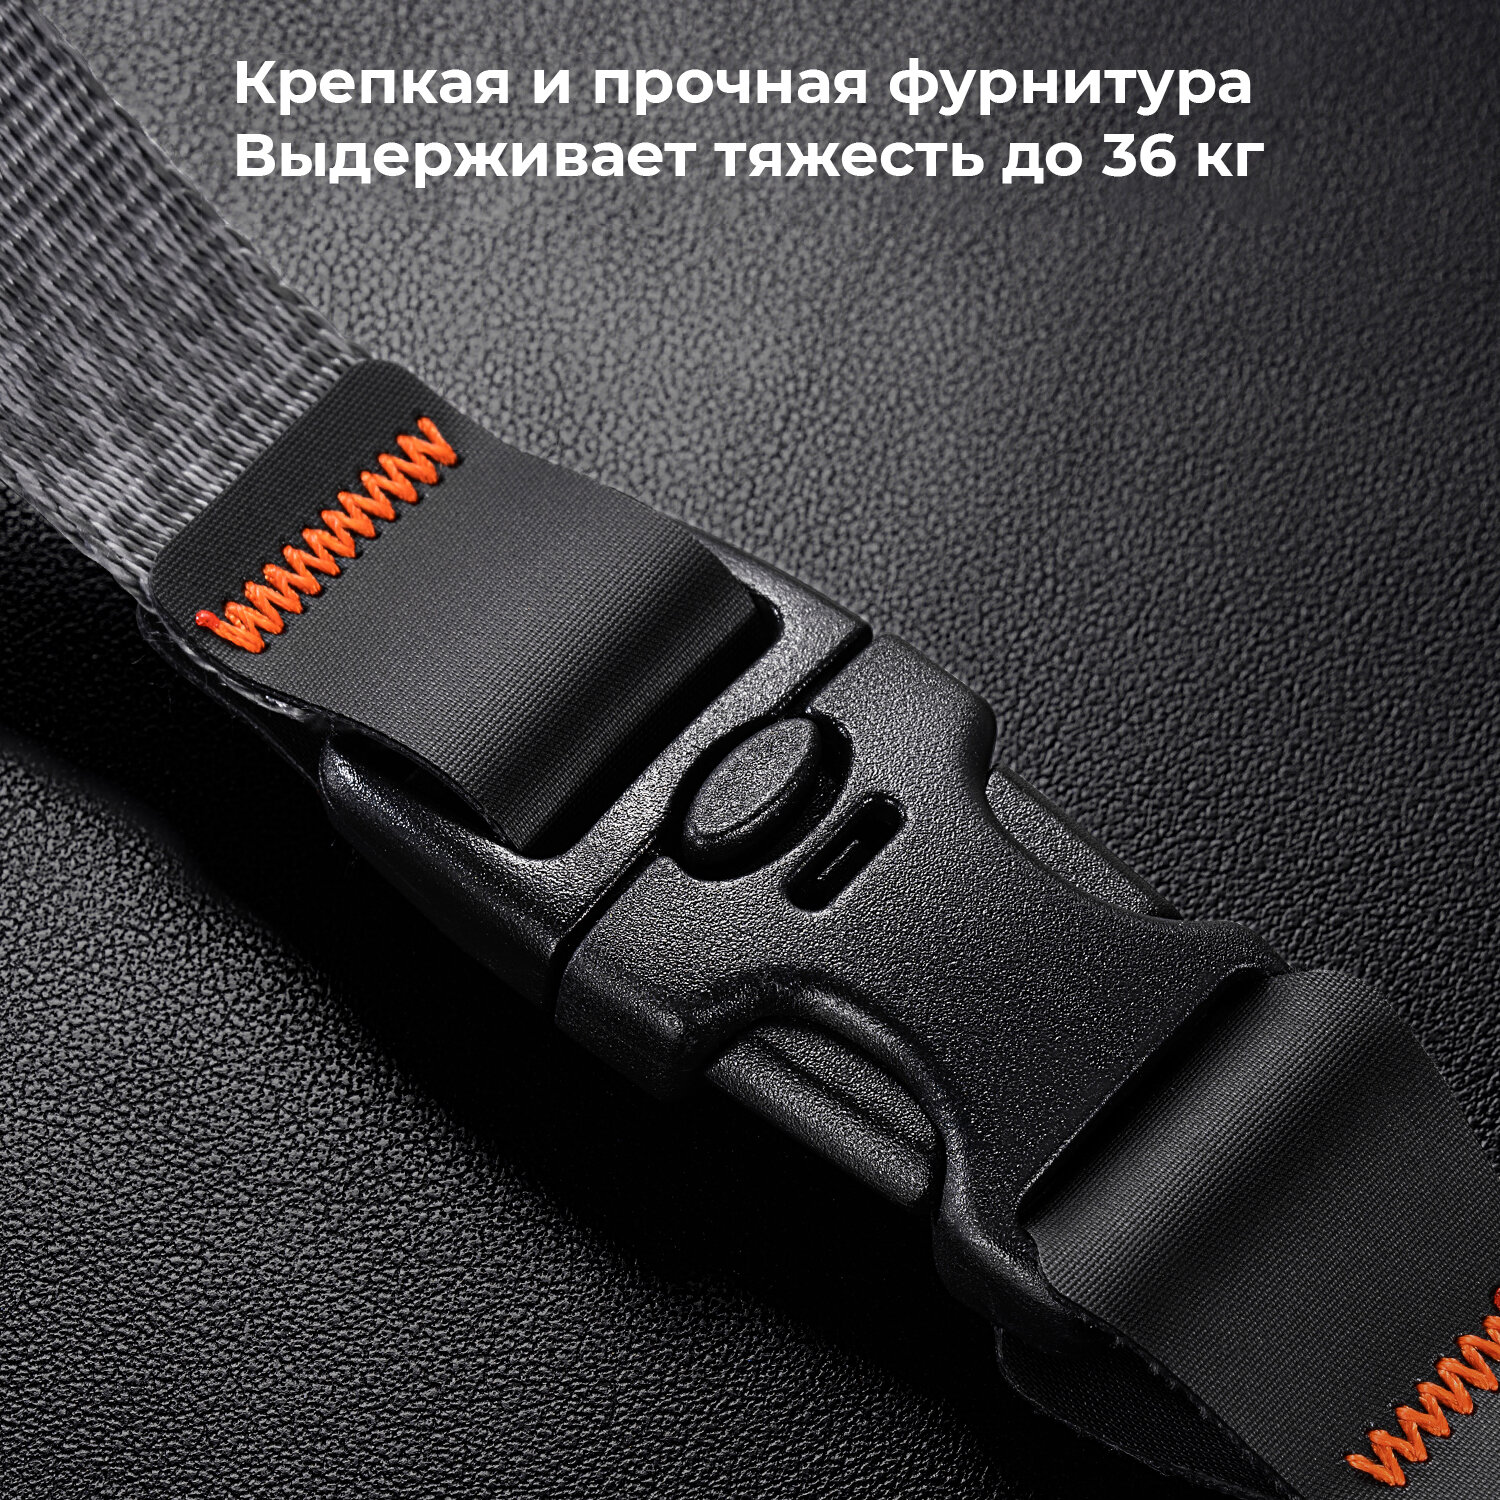 Ремешок для камеры K&F Concept Alpha Wrist strap